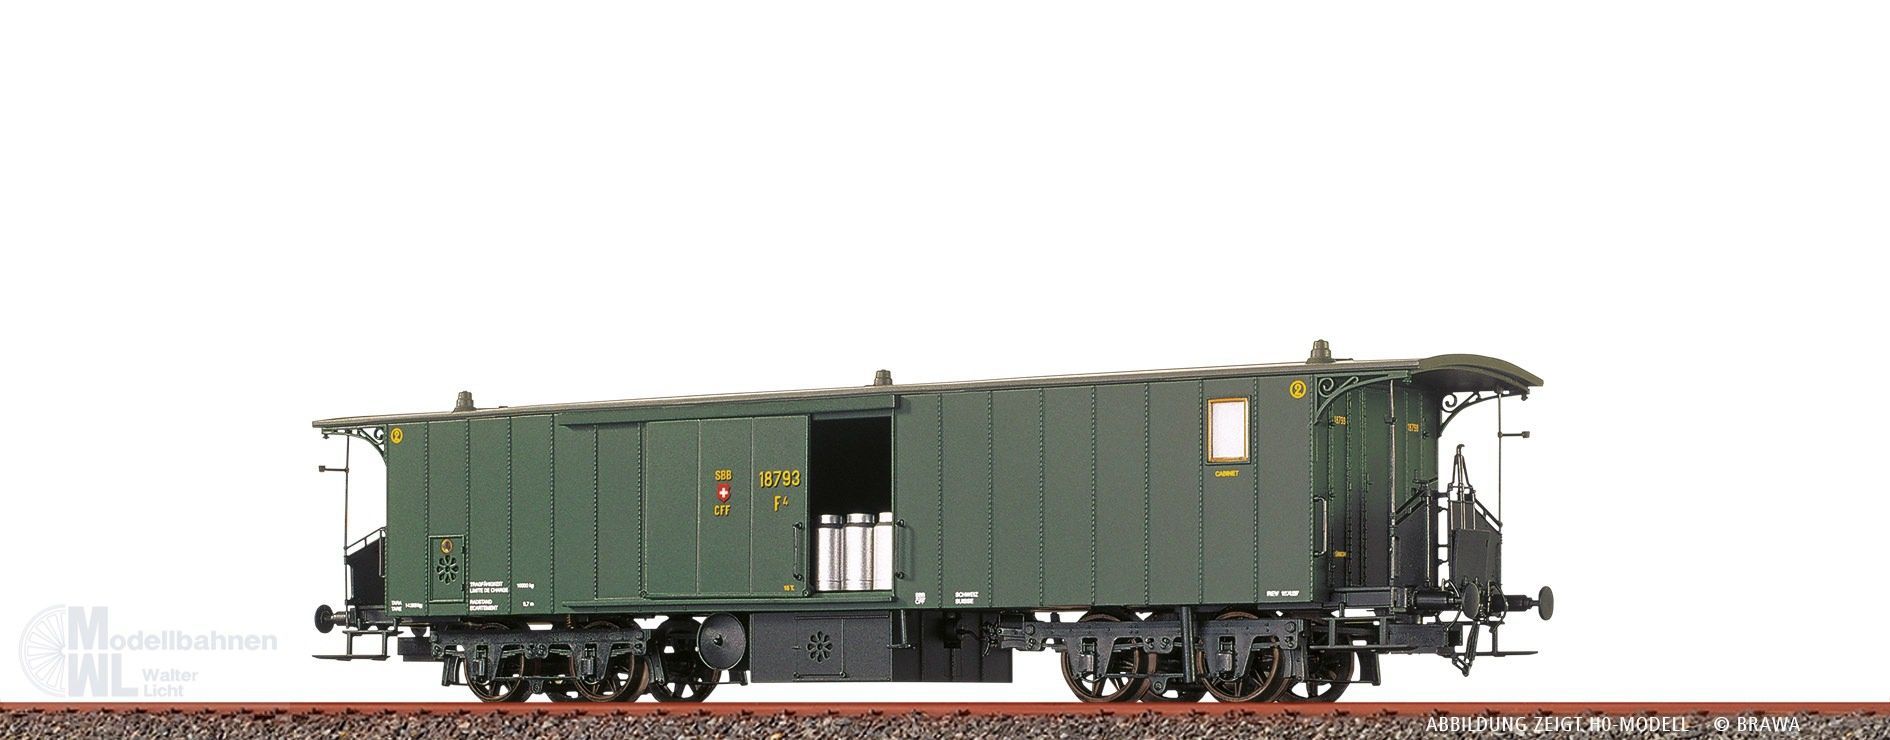 Brawa 65088 - Gepäckwagen SBB Ep.II F4 18793 N 1:160